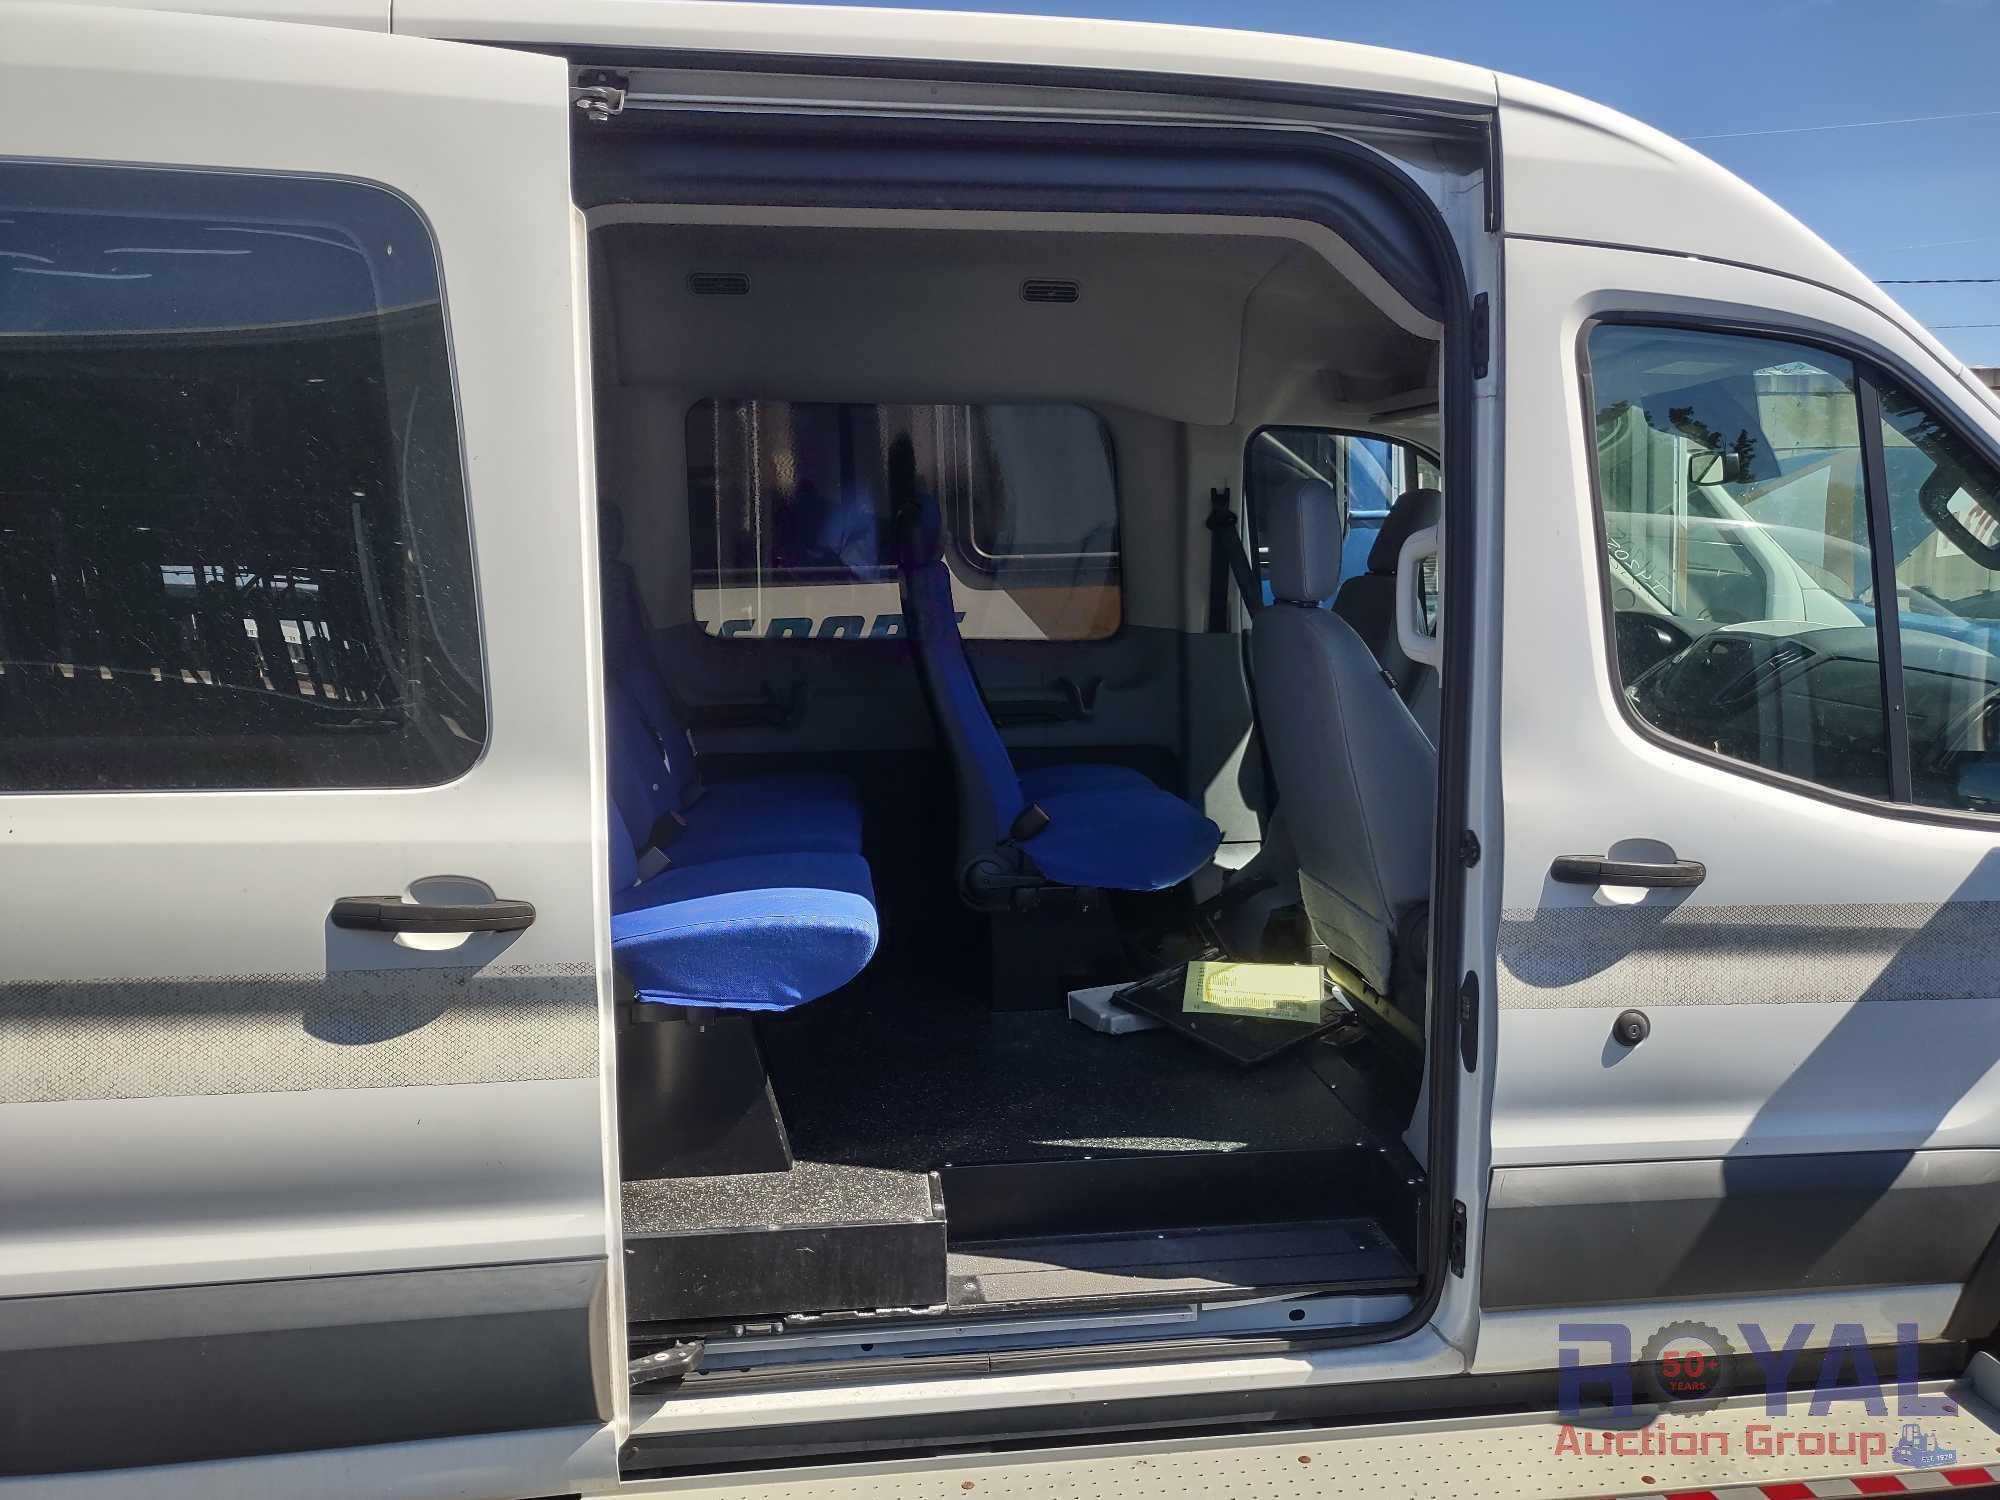 2015 Ford Transit 350 Passenger Van